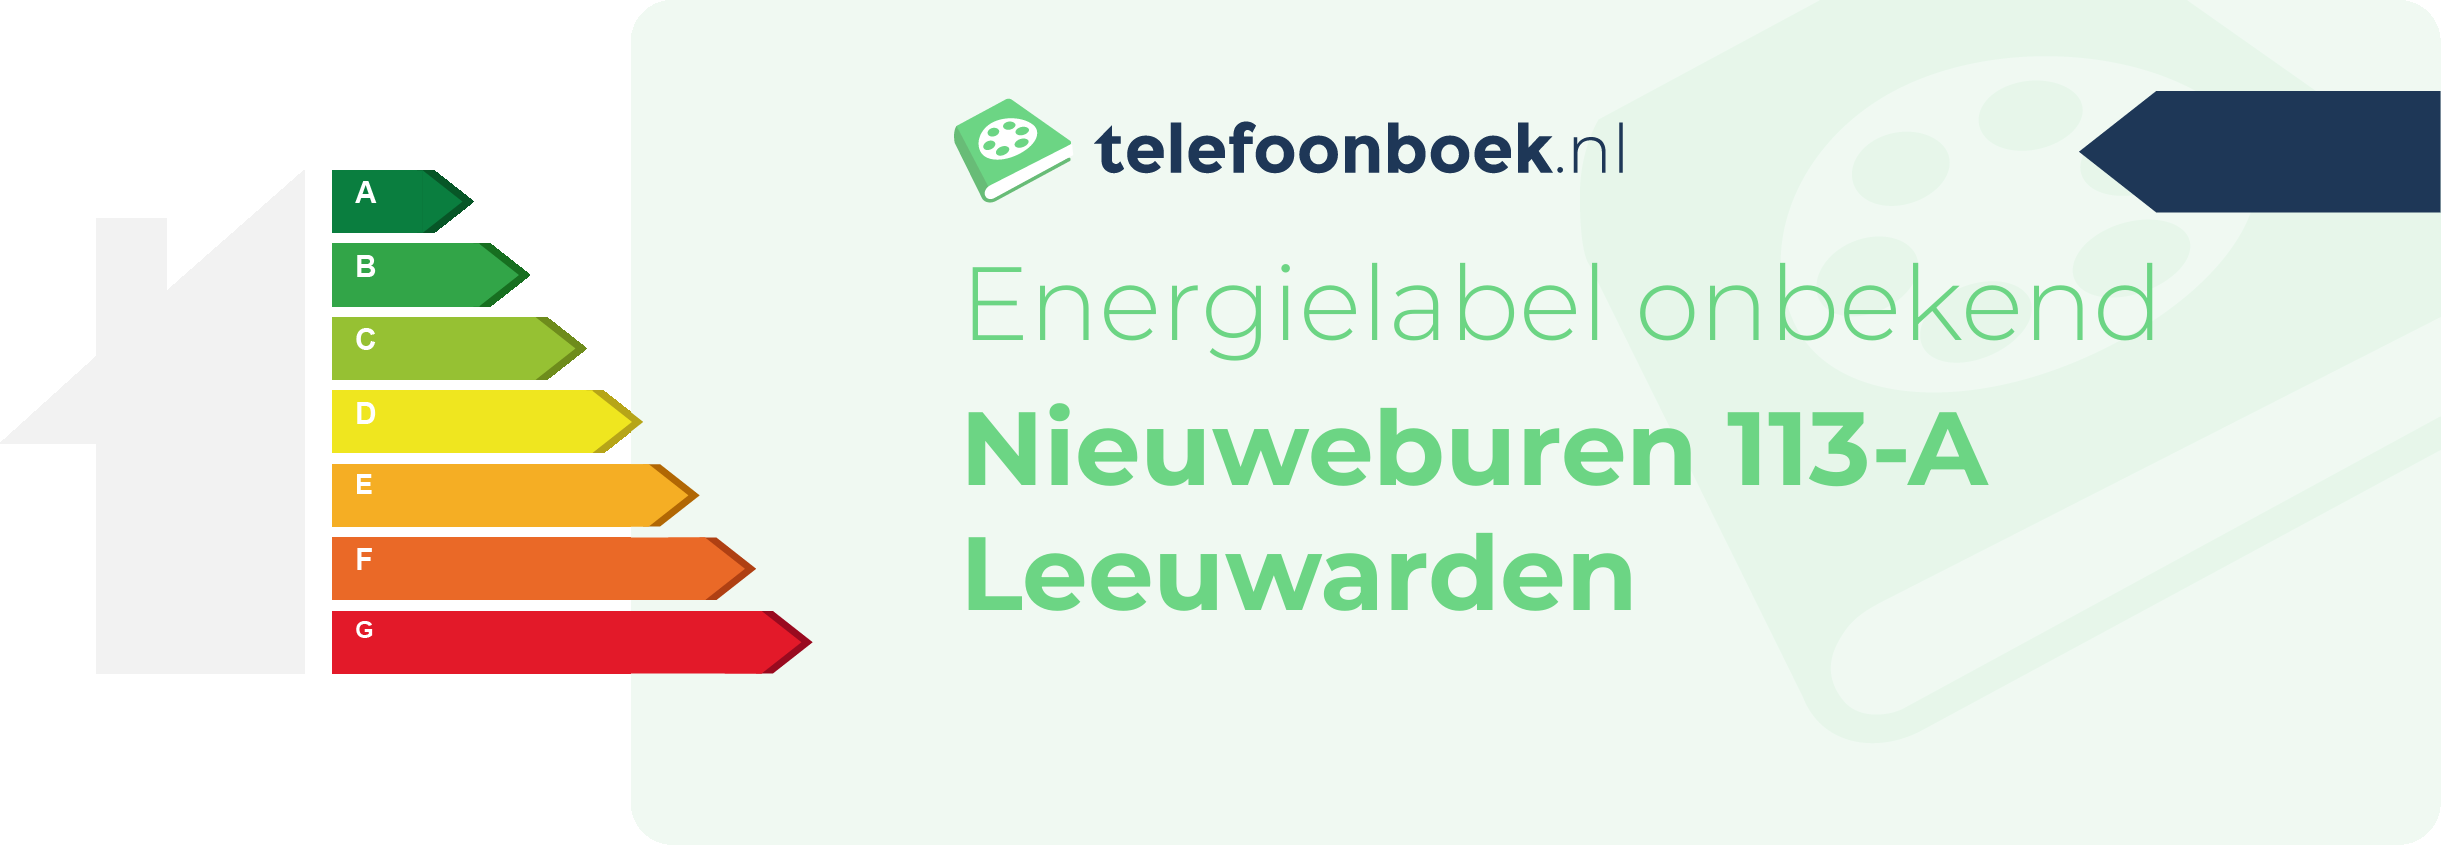 Energielabel Nieuweburen 113-A Leeuwarden